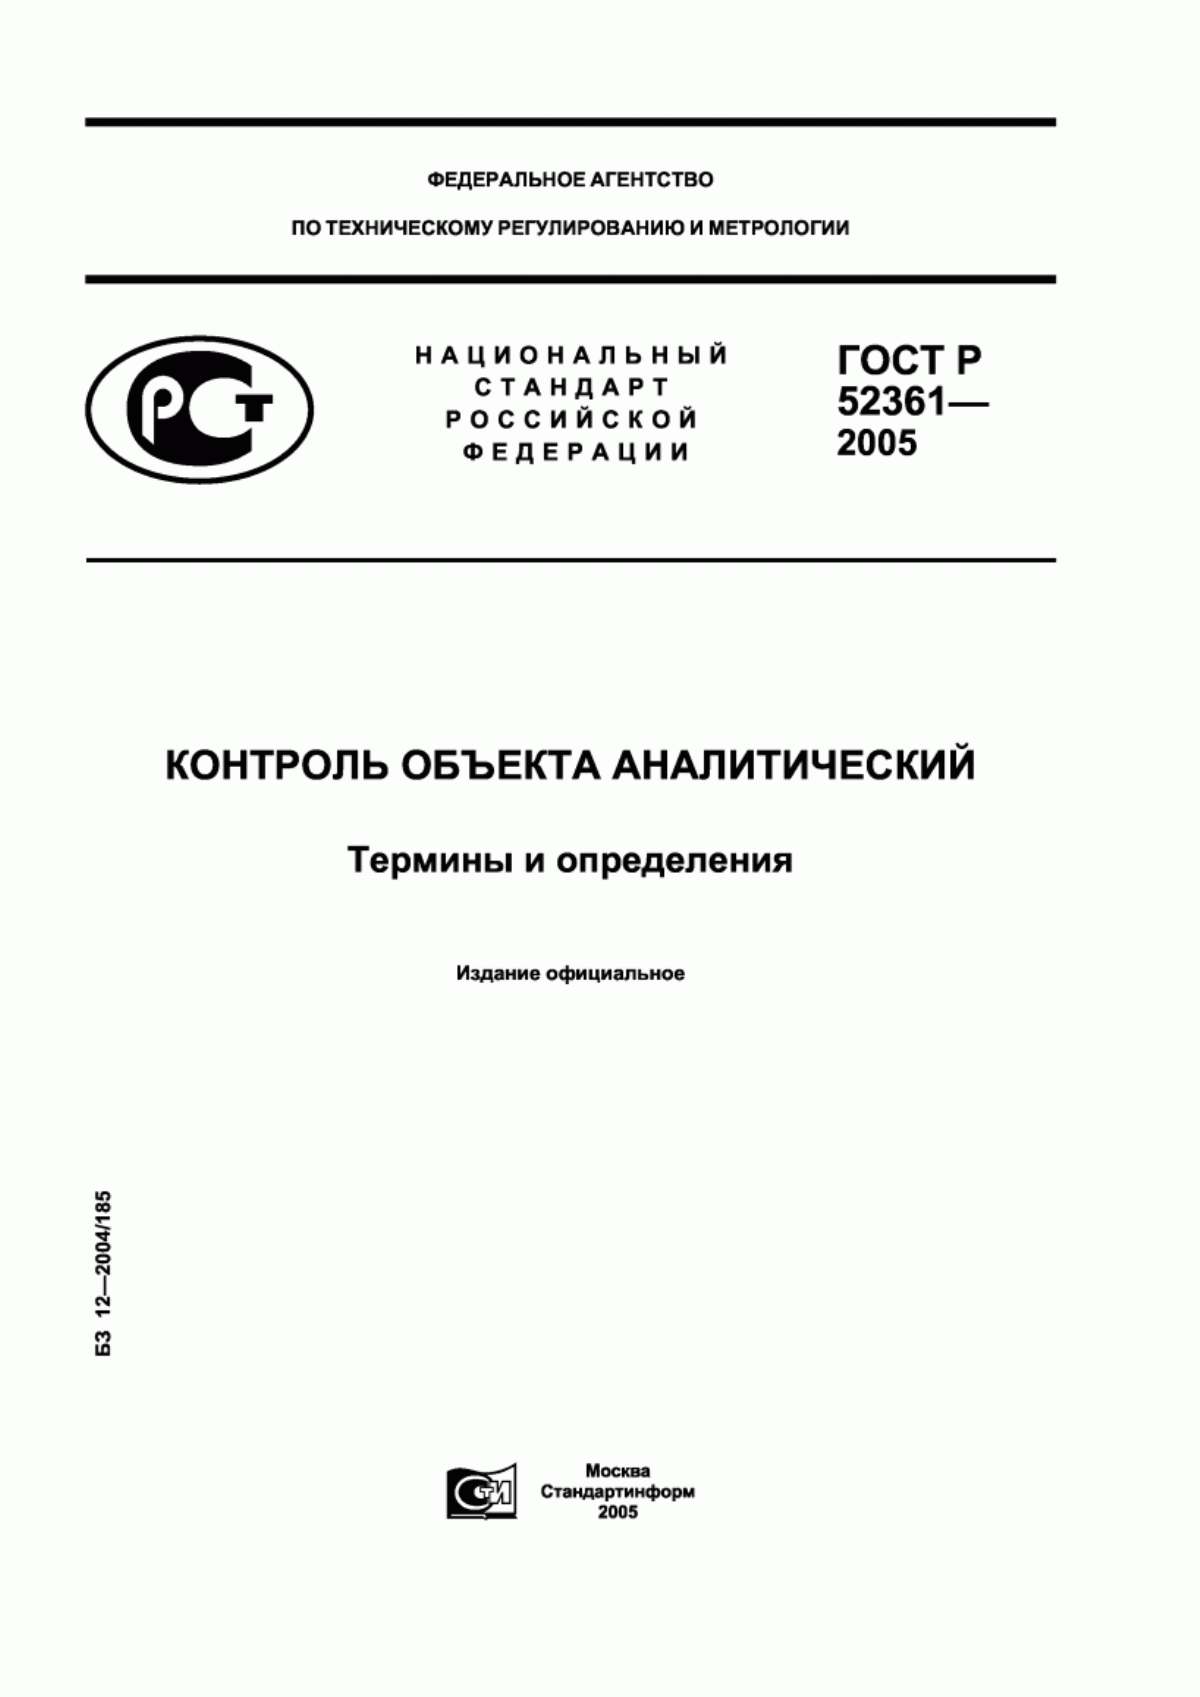 ГОСТ Р 52361-2005 Контроль объекта аналитический. Термины и определения